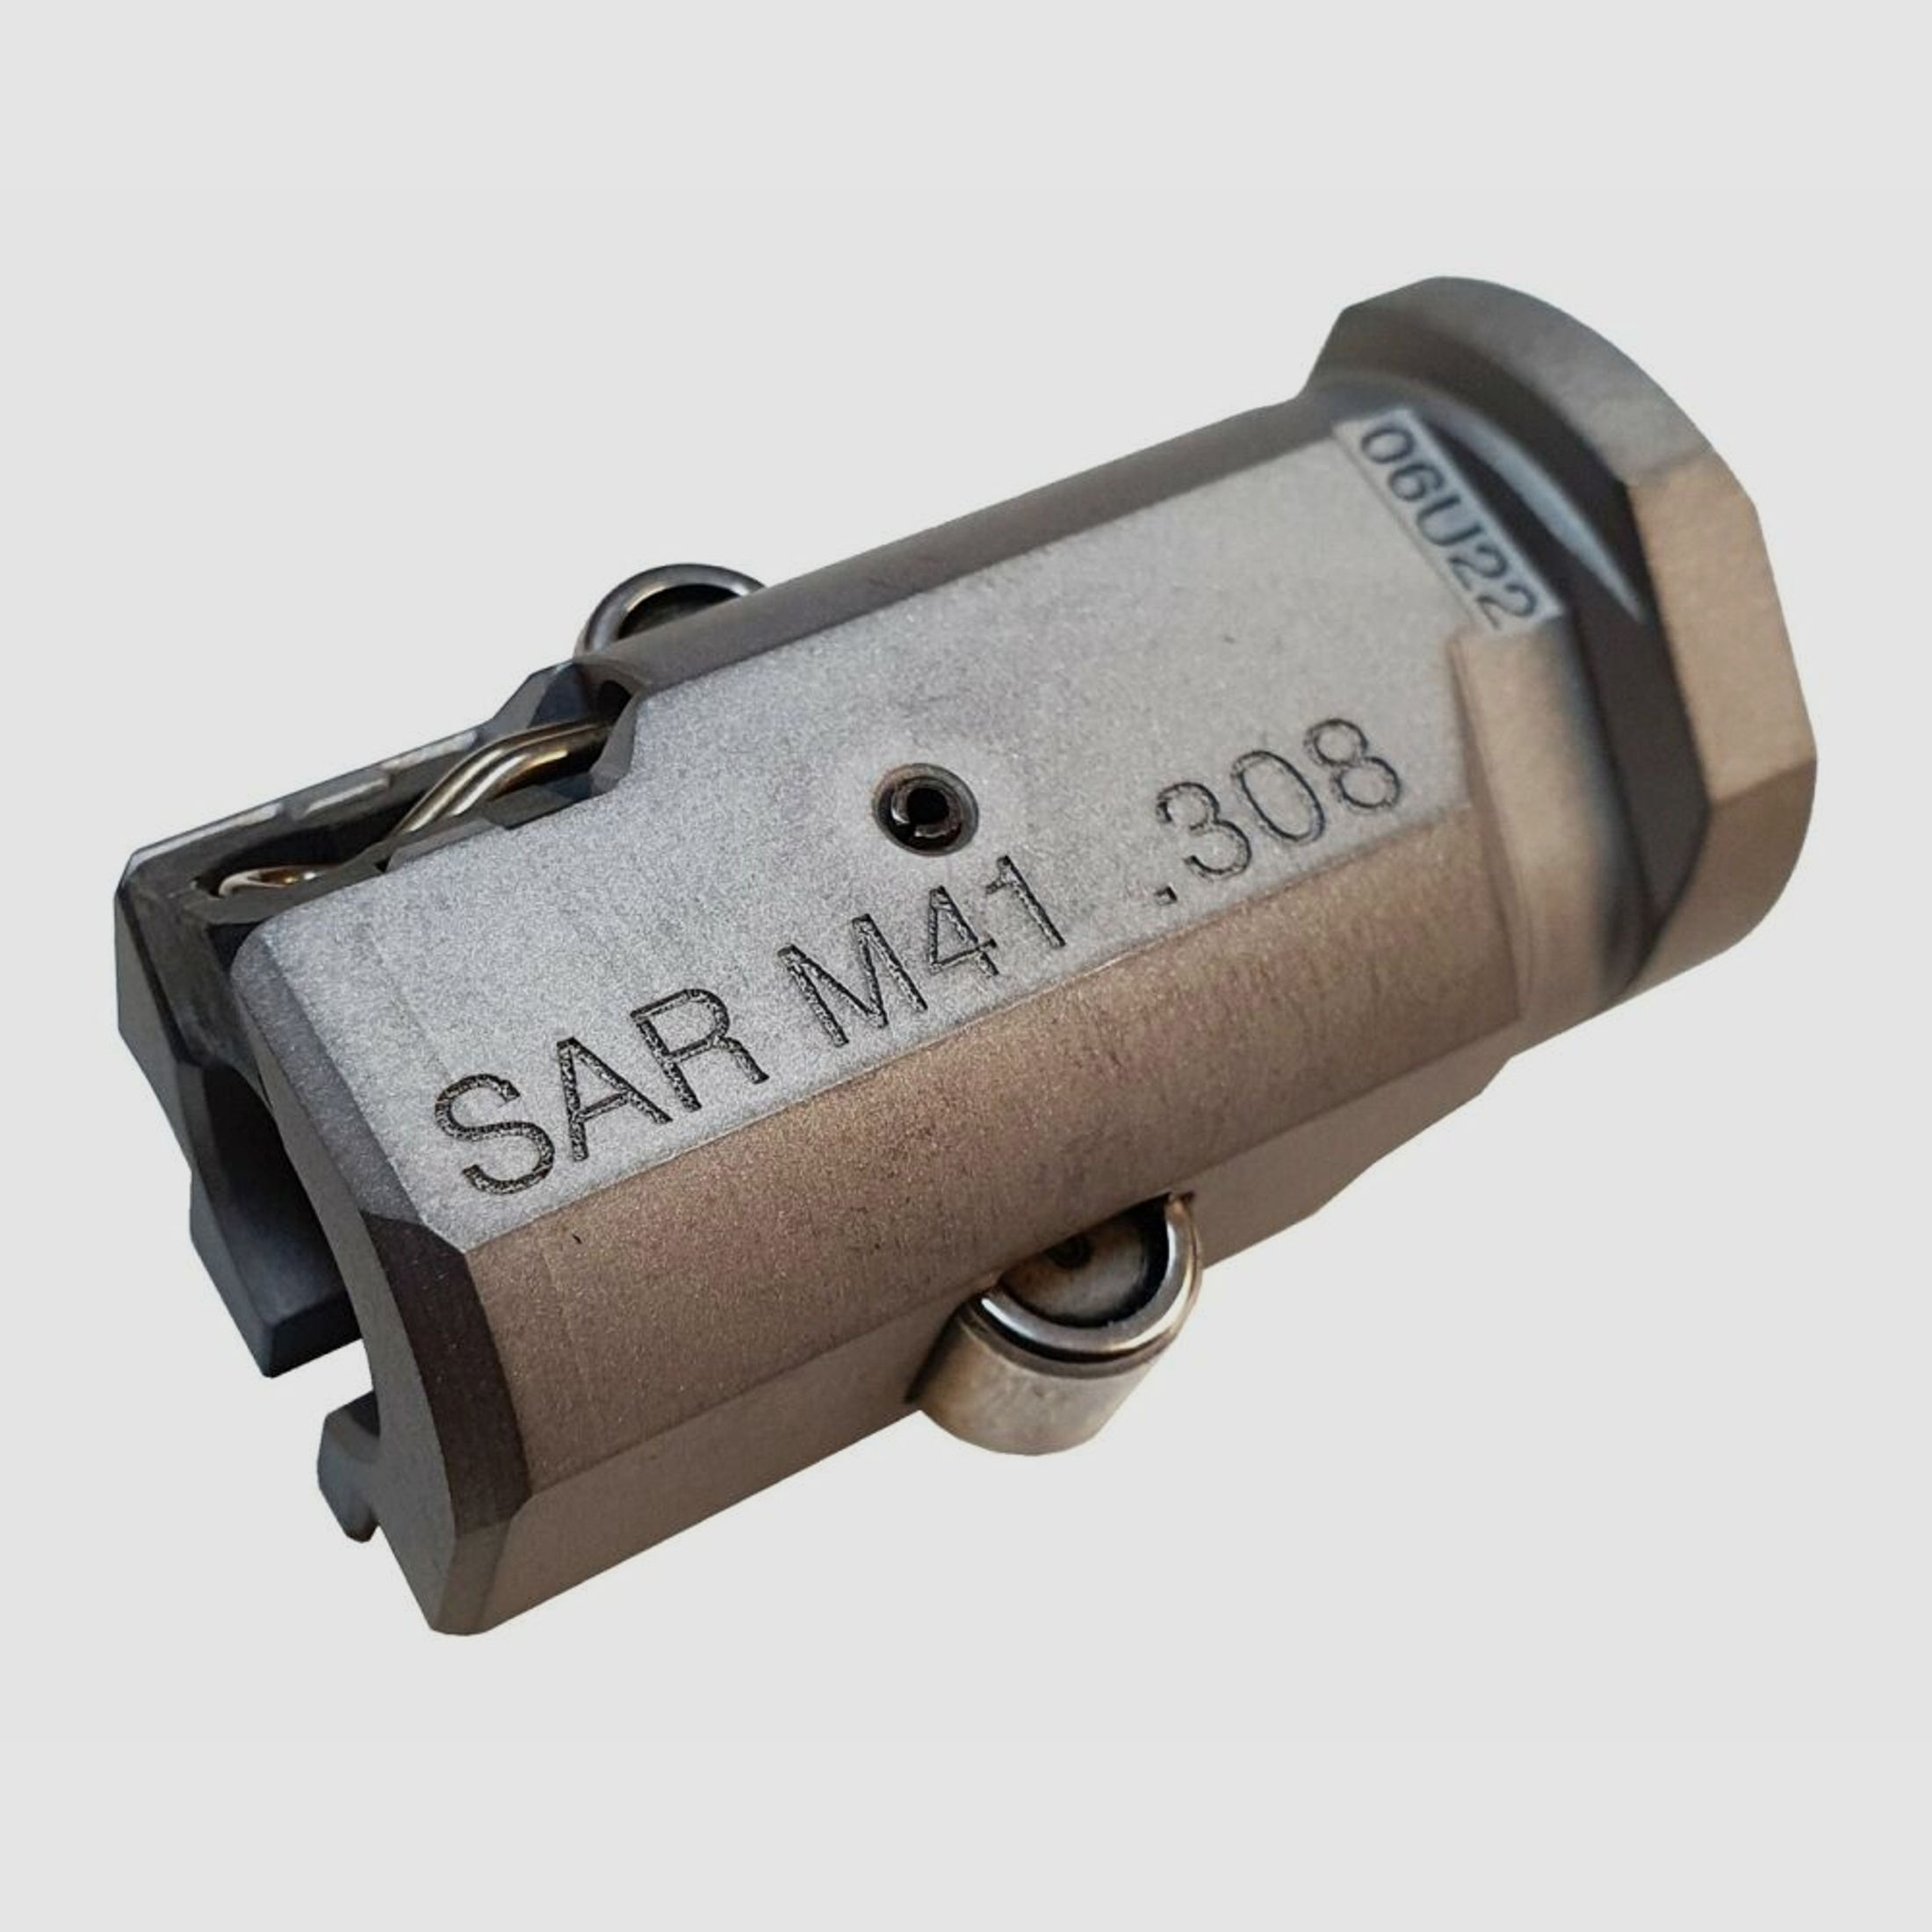 Schwaben Arms GmbH	 SAR M41 Verschlusskopf .308 Win. komplett. Passend für HK G3 Nachbauten MKE T41, XR41, HSG41, etc.